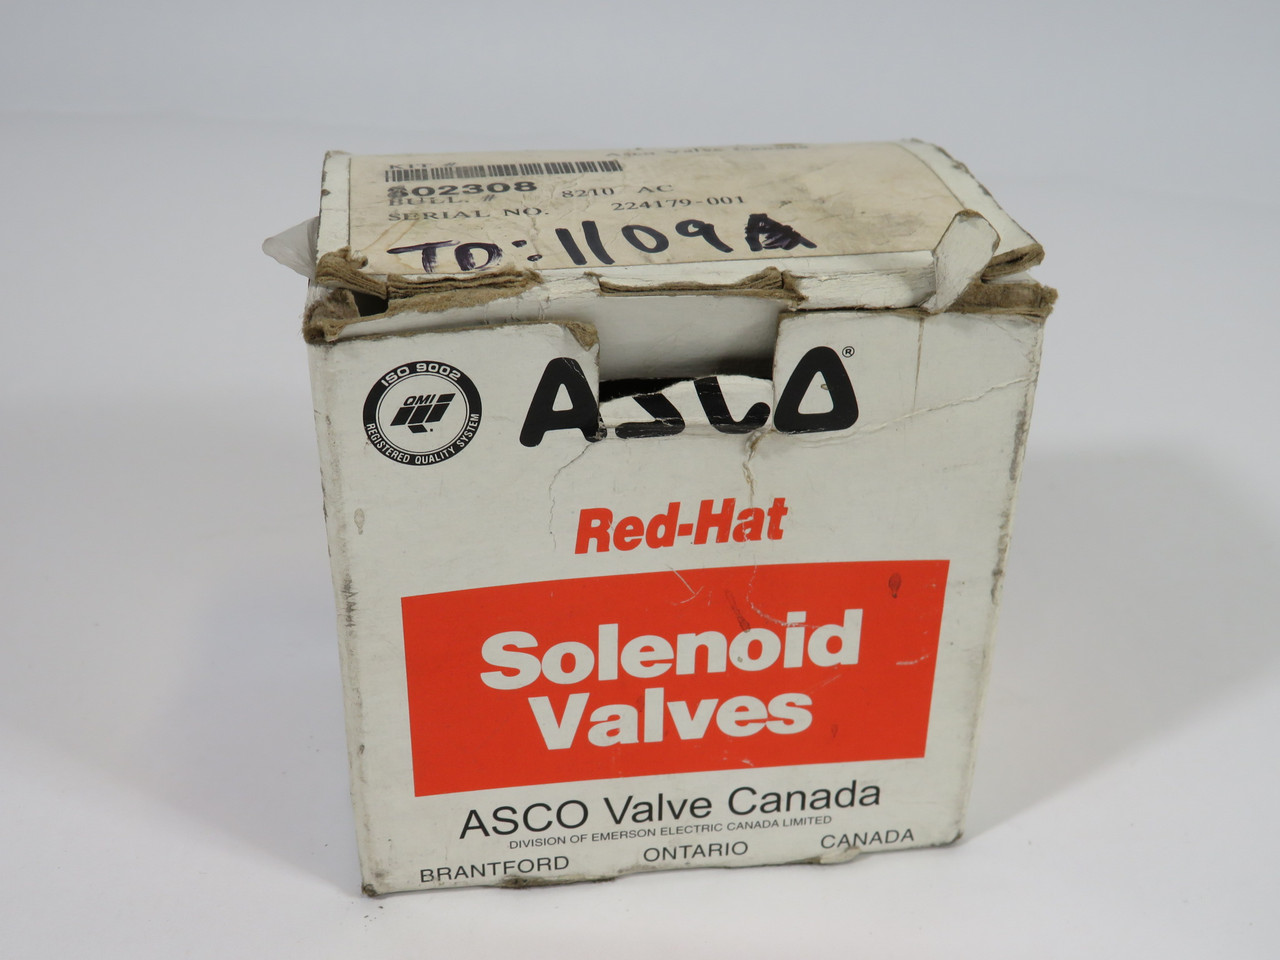 ASCO 302308 Valve Rebuilt Kit for 8210 Solenoid Valves OPEN BAG ! NEW !